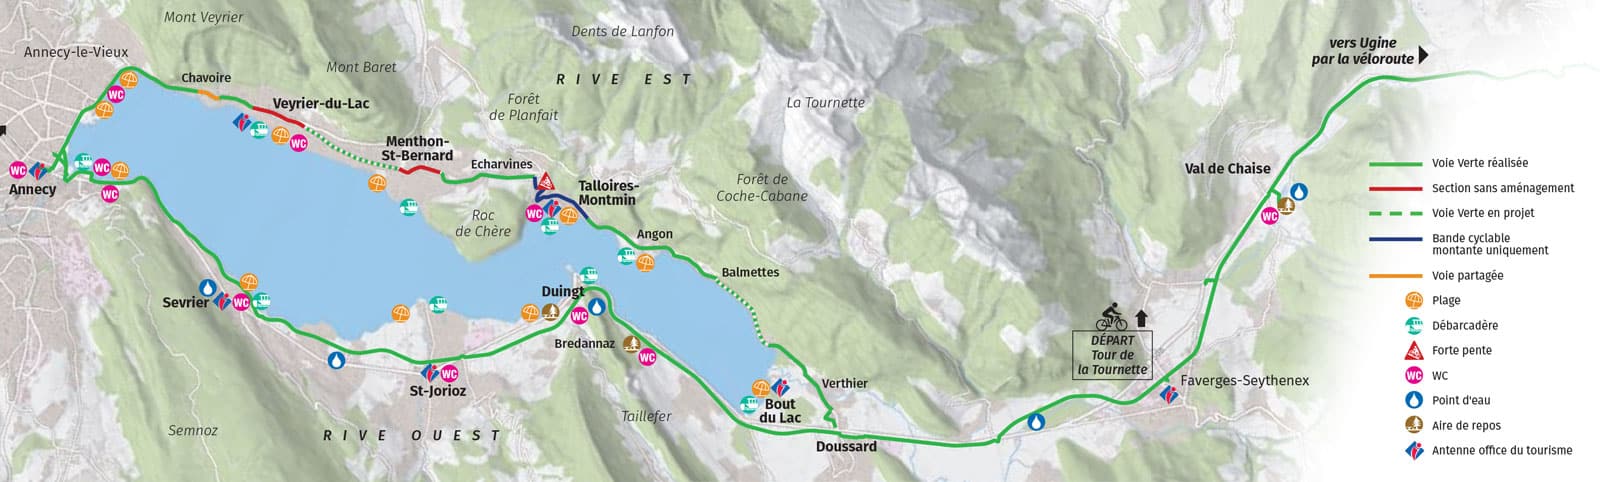 Le plan du tour du lac d'Annecy